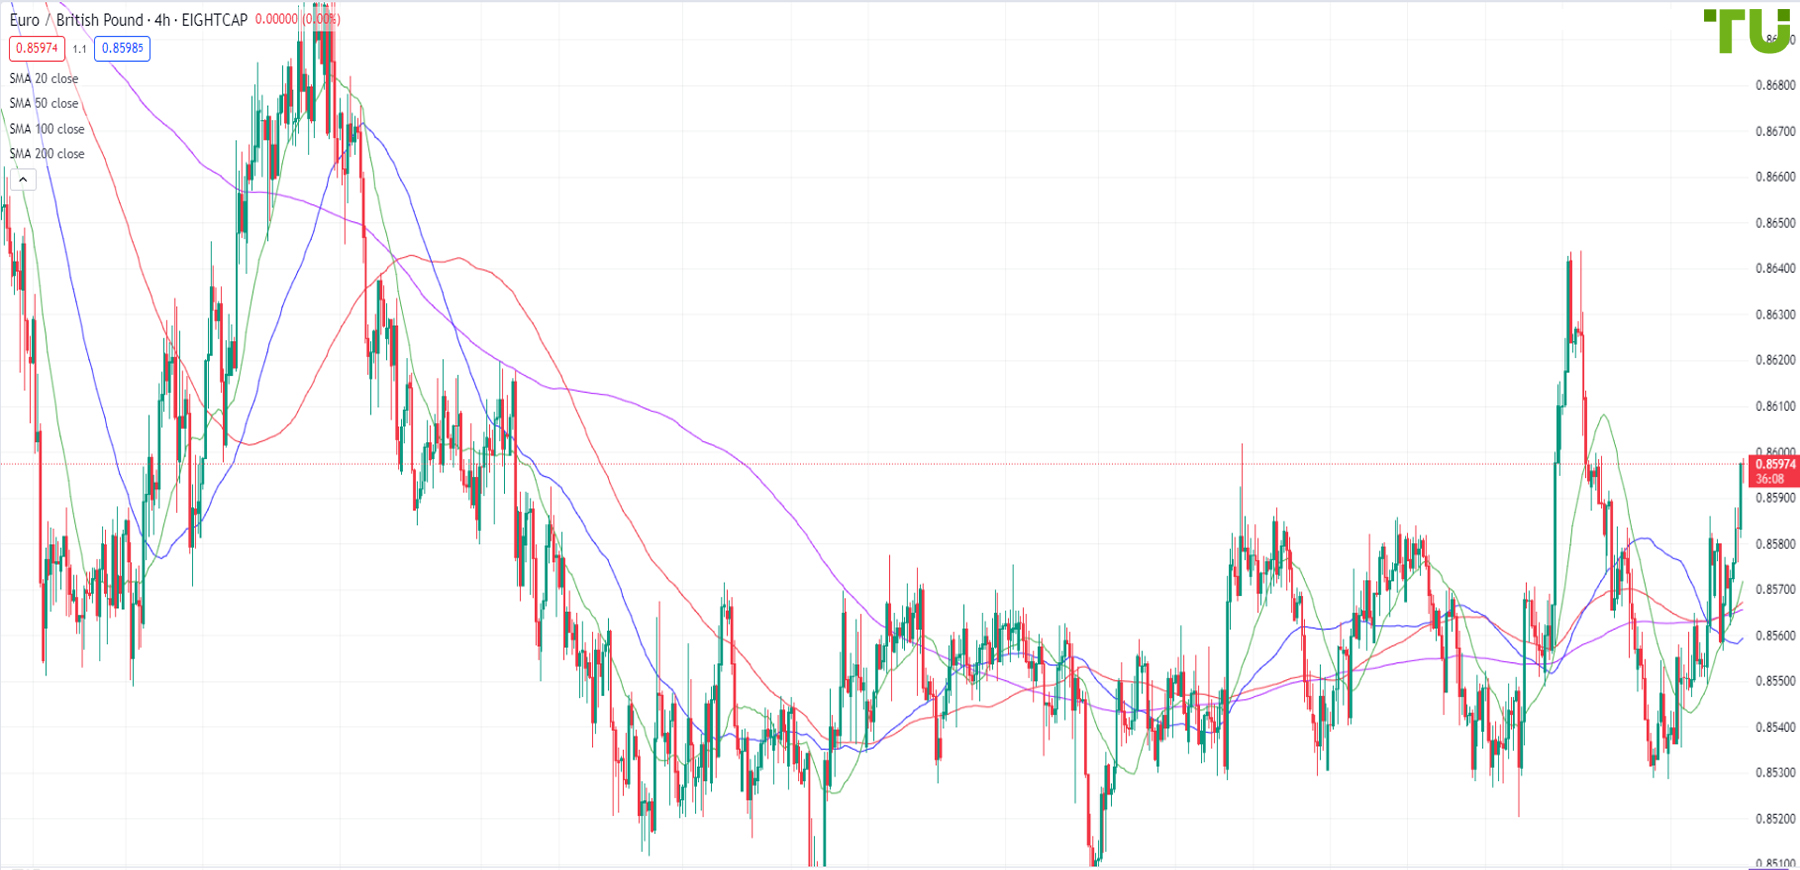 EUR/GBP moves higher